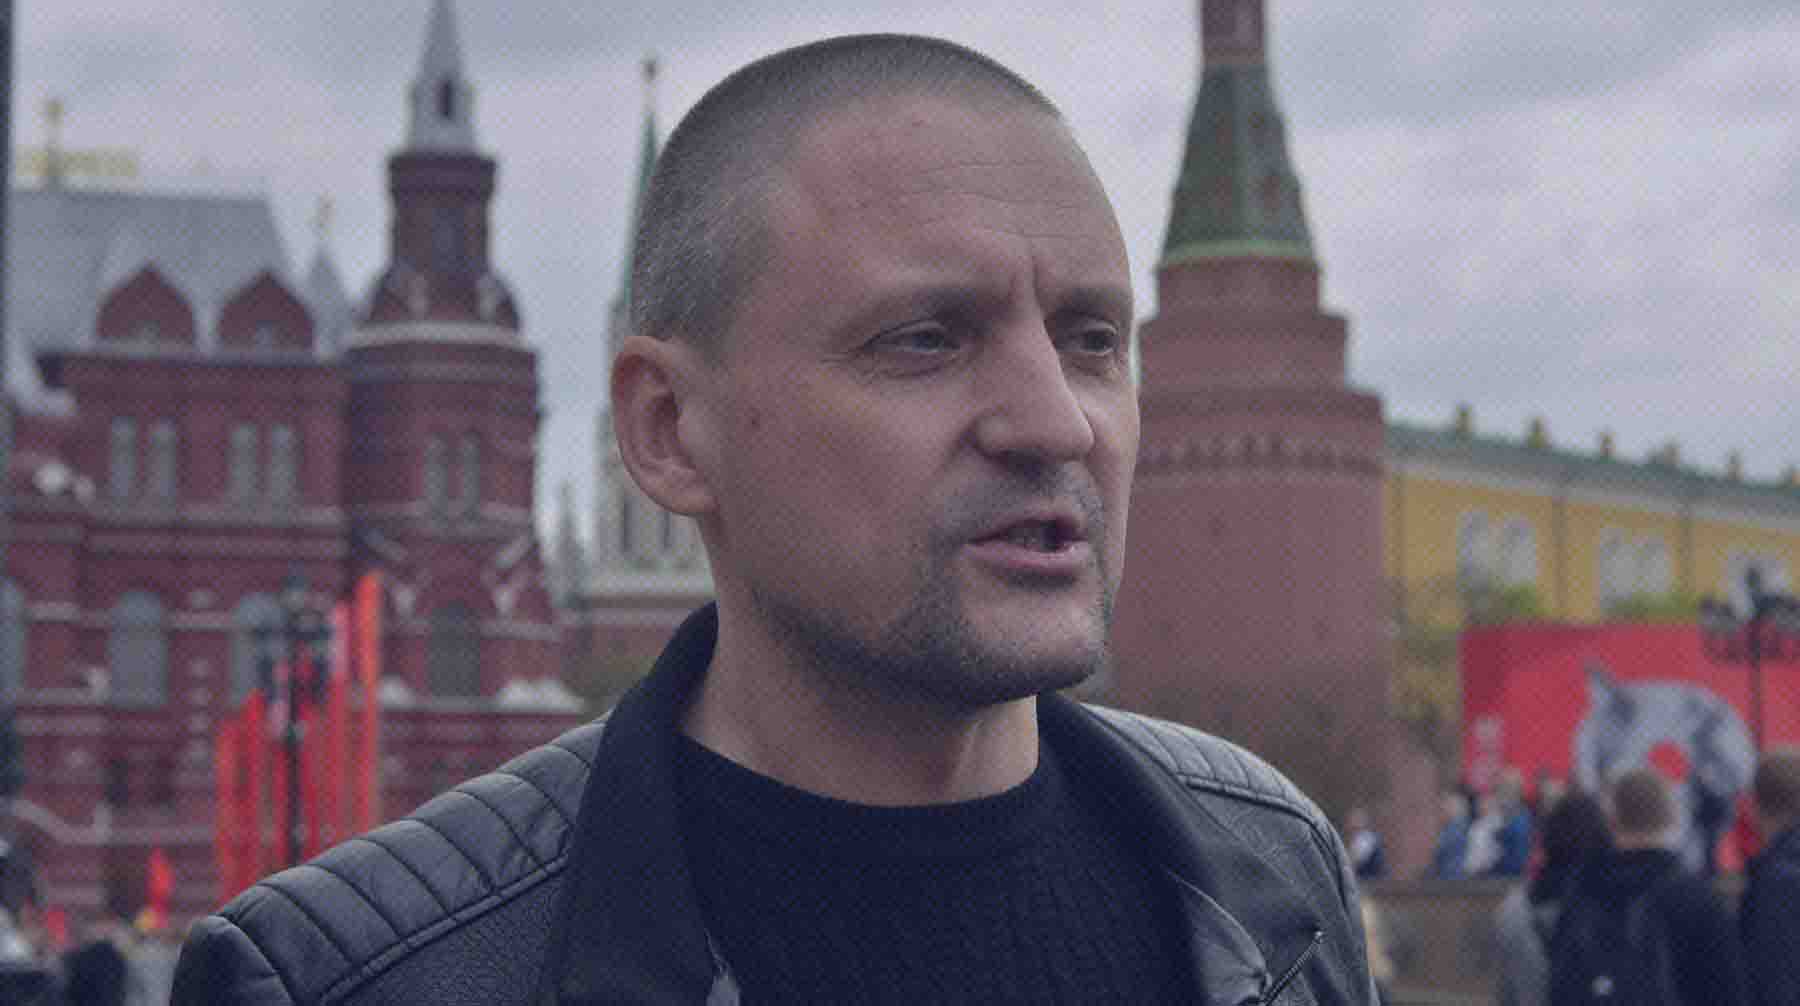 Он участвовал в согласованном митинге КПРФ, пояснил активист Сергей Удальцов